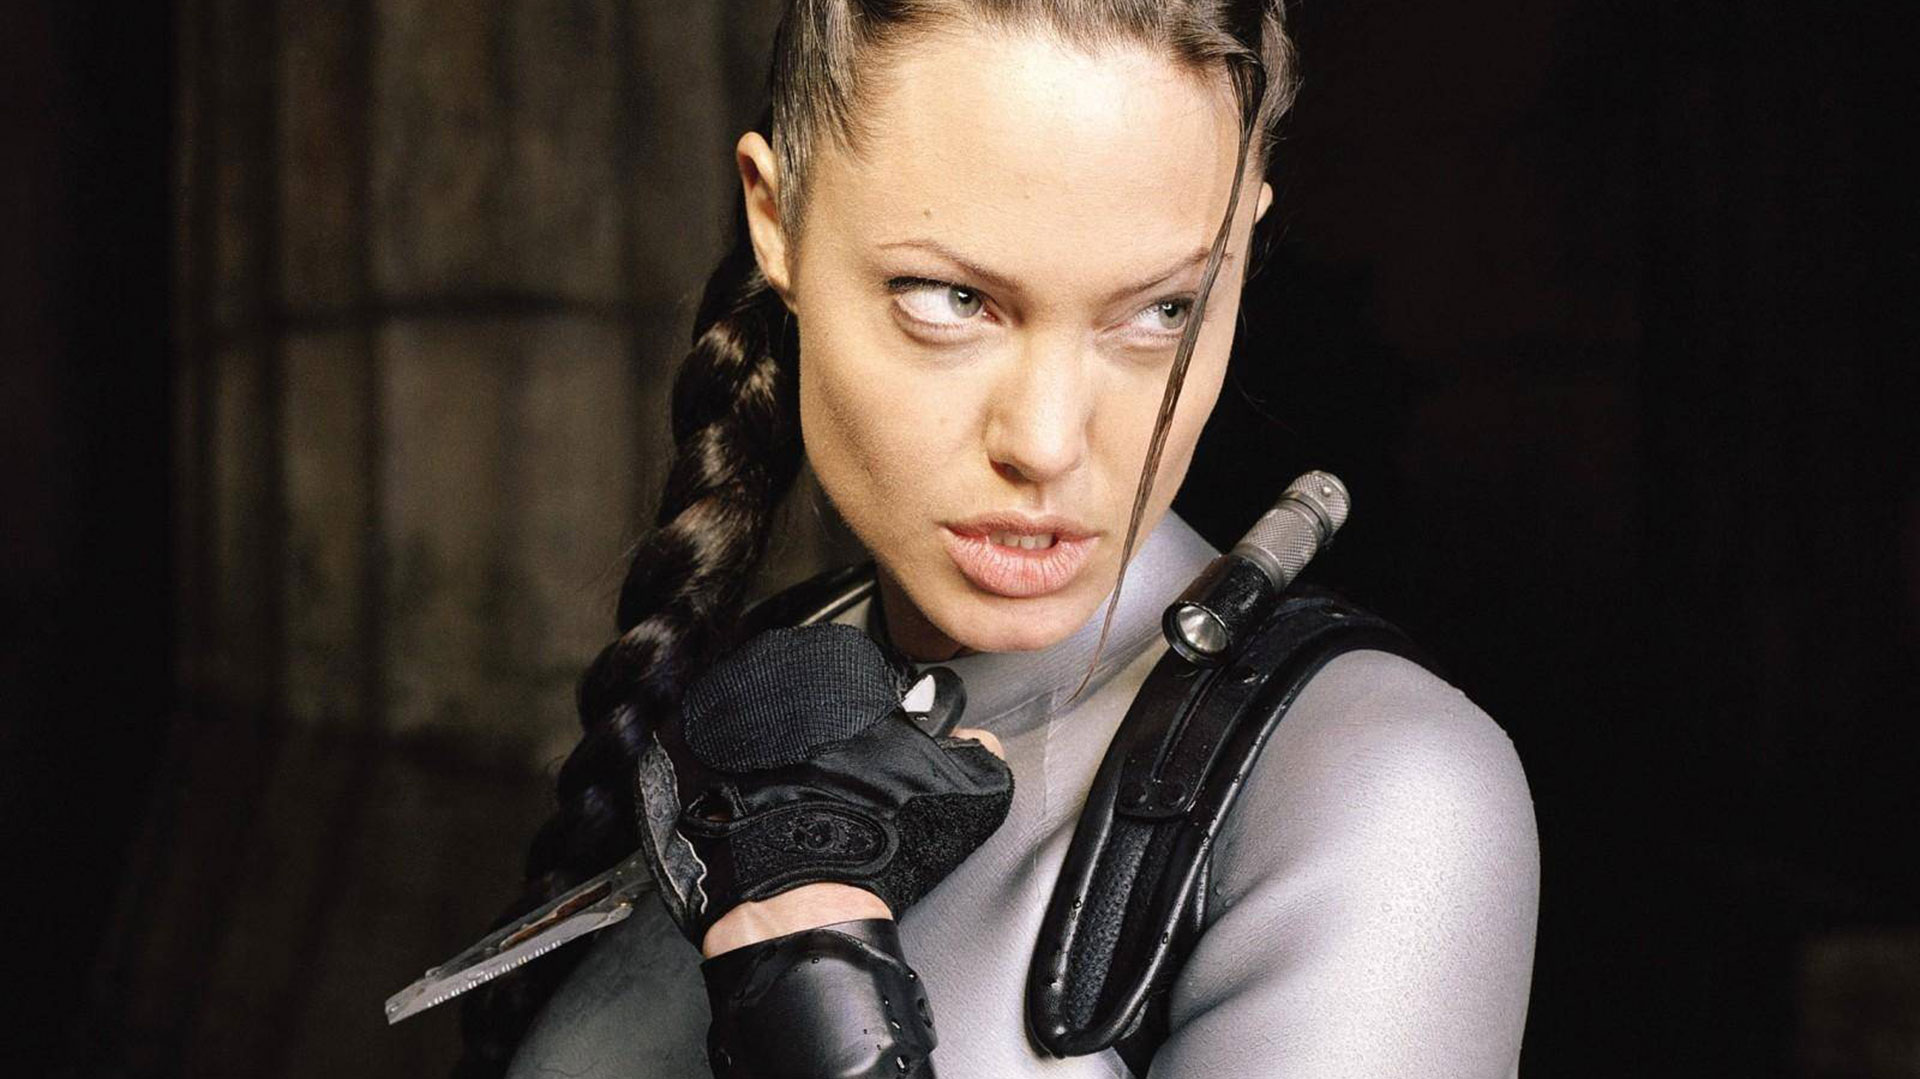 Personaje de ficción interpretado por Angelina Jolie